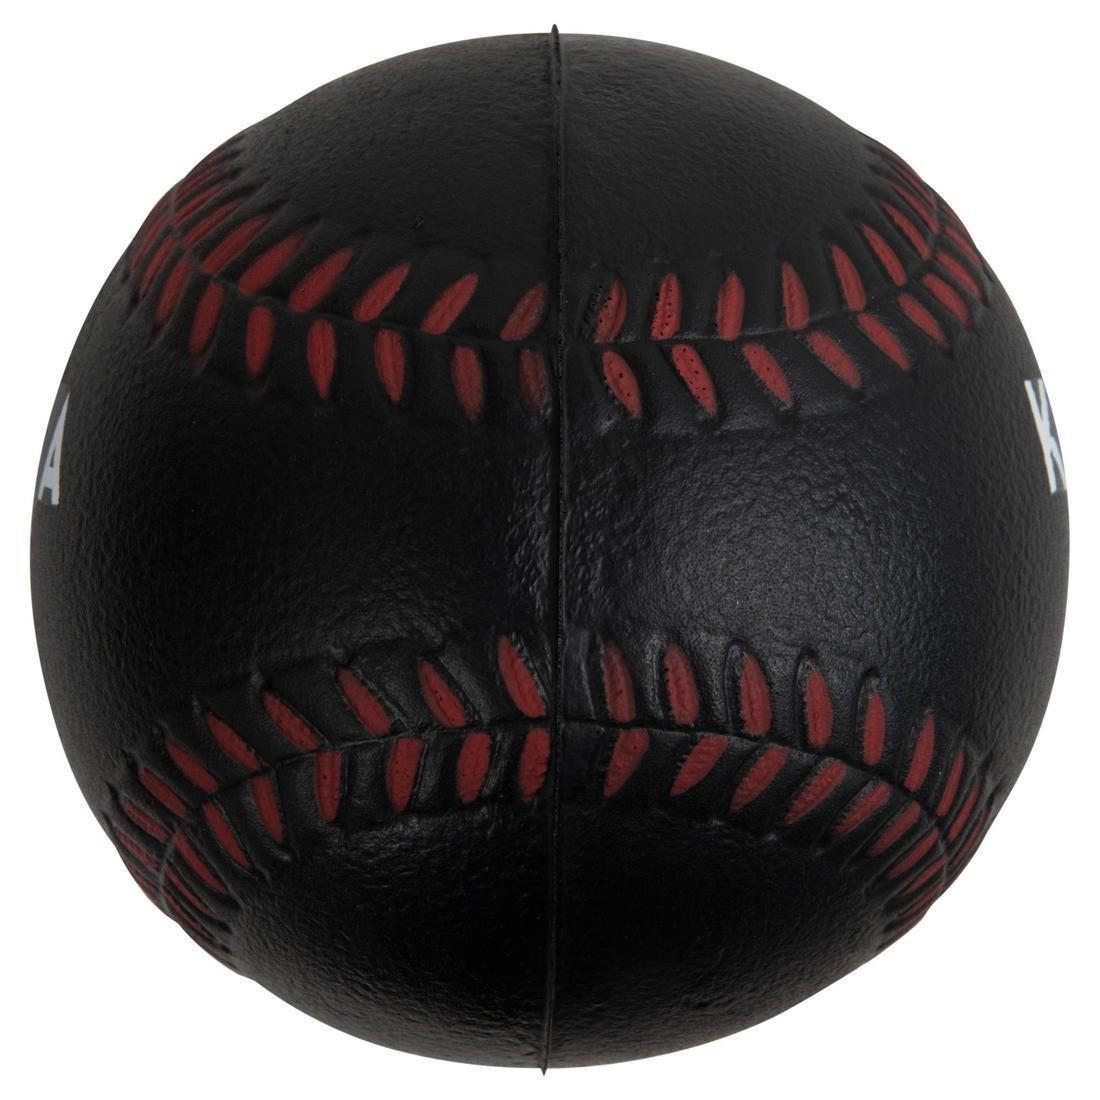 KIPSTA - Kipsta 11 Ba100 Foam Baseball Single Ball, Brown